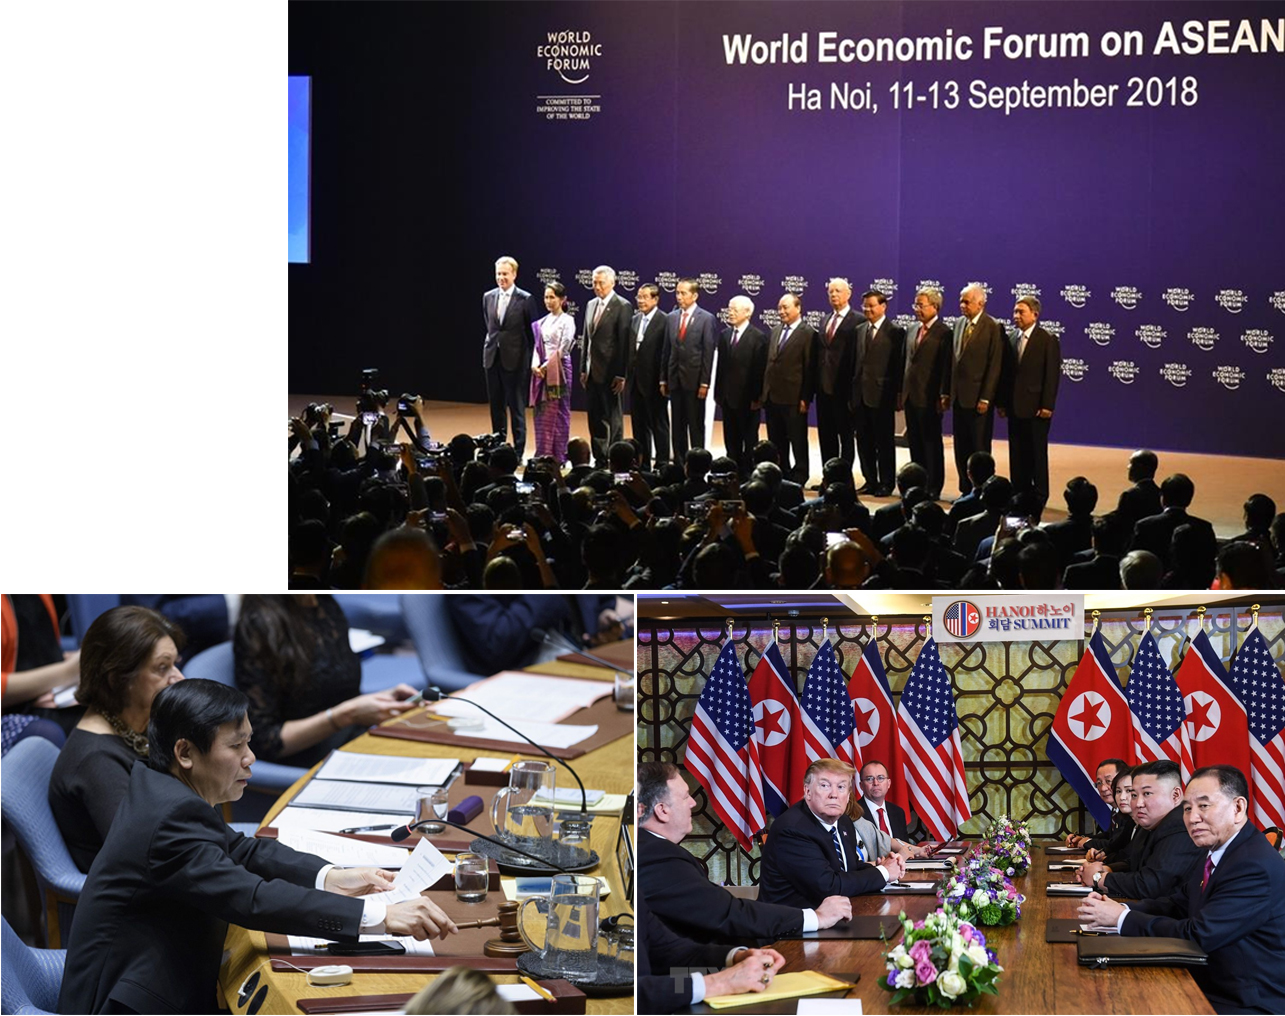 Trong các năm vừa qua, Việt Nam gặt hái được nhiều thành tựu lớn về ngoại giao như tổ chức Diễn đàn kinh tế thế giới, Hội nghị thượng đỉnh Mỹ - Triều Tiên; được bầu là thành viên không thường trực của Hội đồng Bảo an Liên hợp quốc...